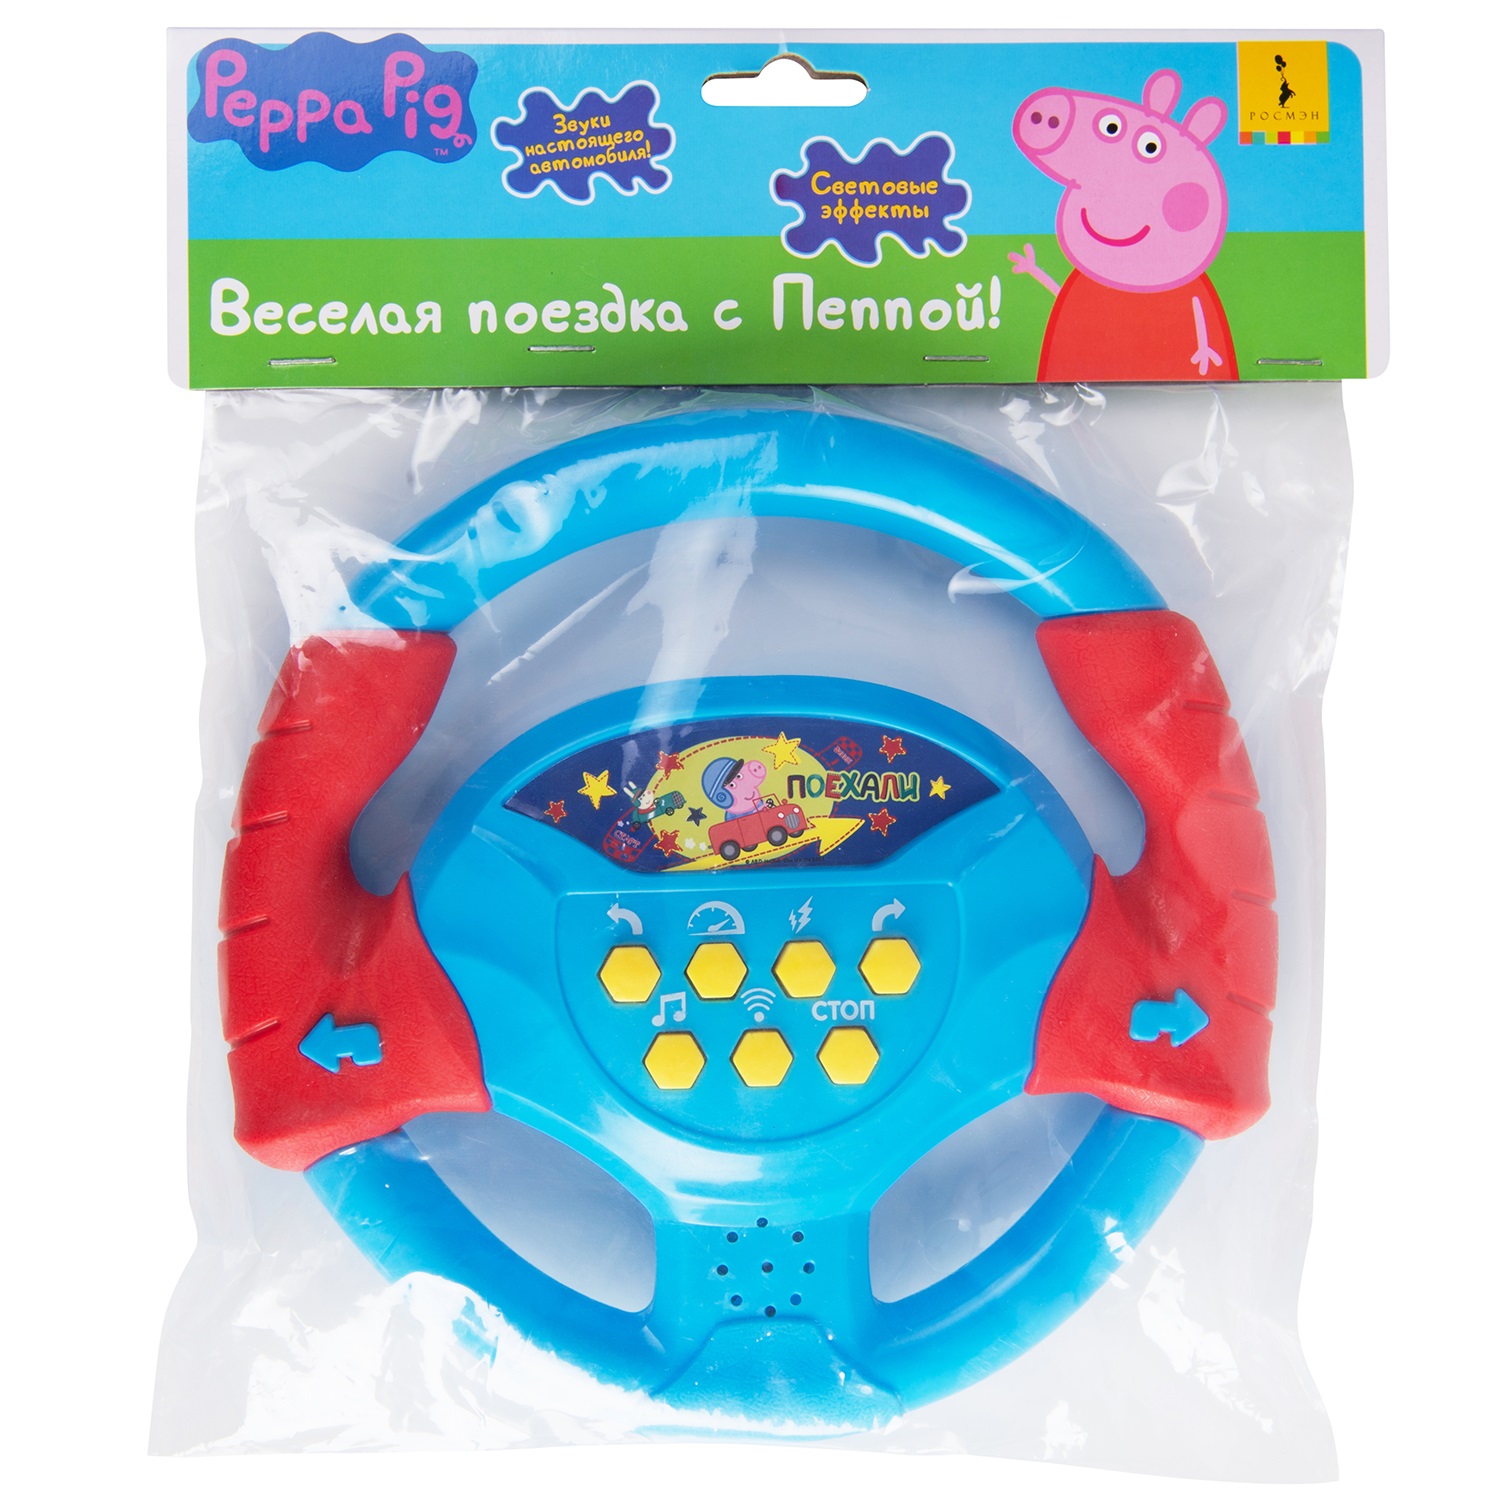 Детский гаджет Peppa Pig Интерактивный руль со светом и звуком